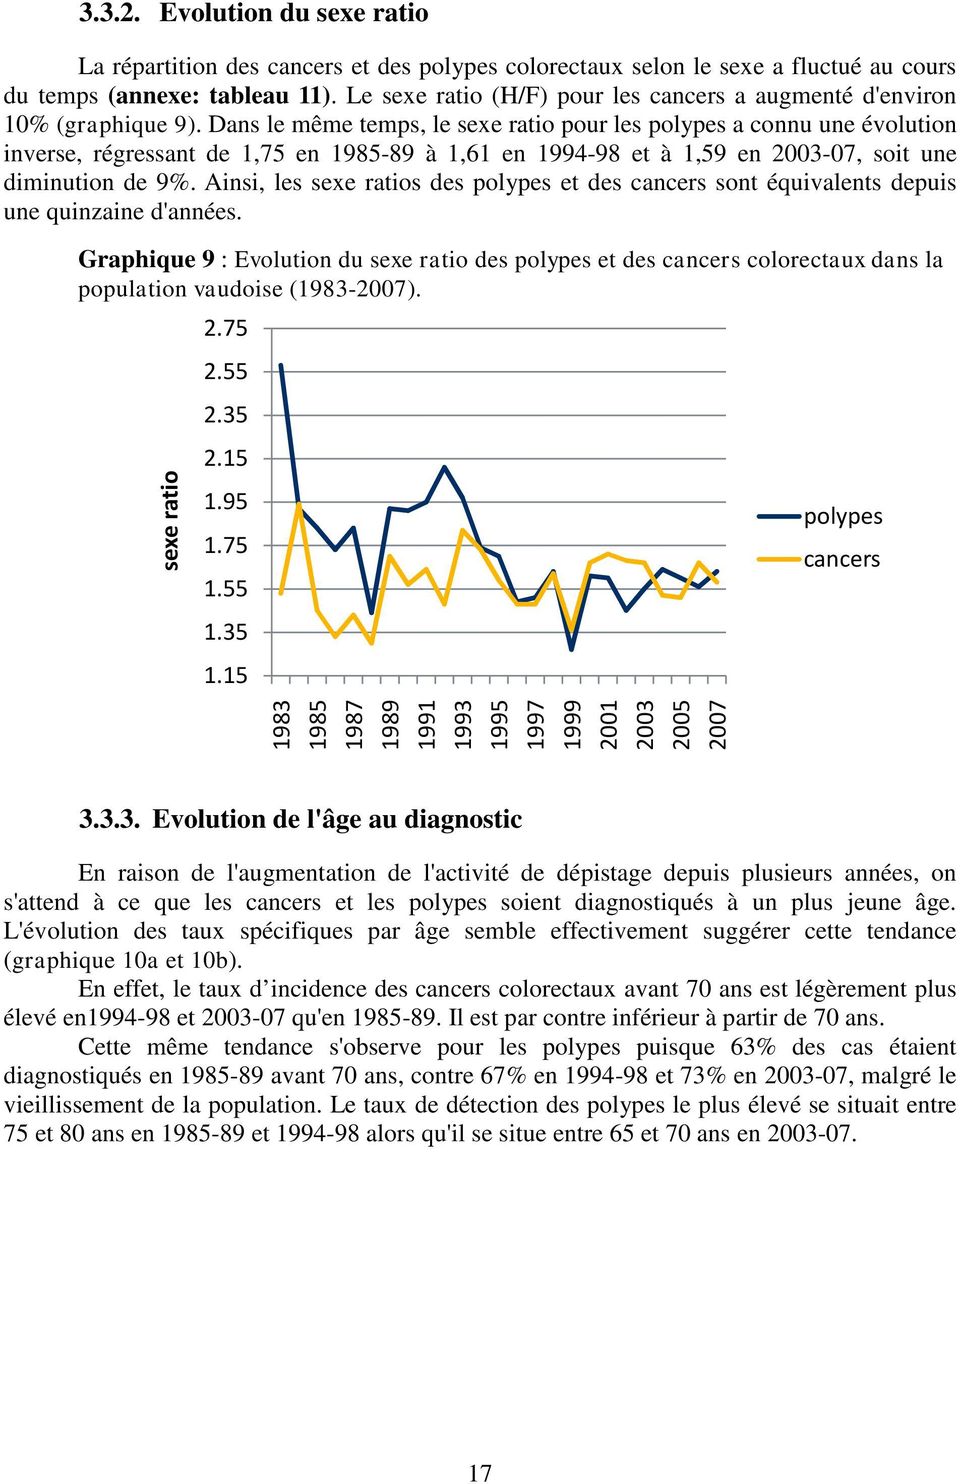 Dans le même temps, le sexe ratio pour les polypes a connu une évolution inverse, régressant de 1,75 en 1985-89 à 1,61 en 1994-98 et à 1,59 en 2003-07, soit une diminution de 9%.